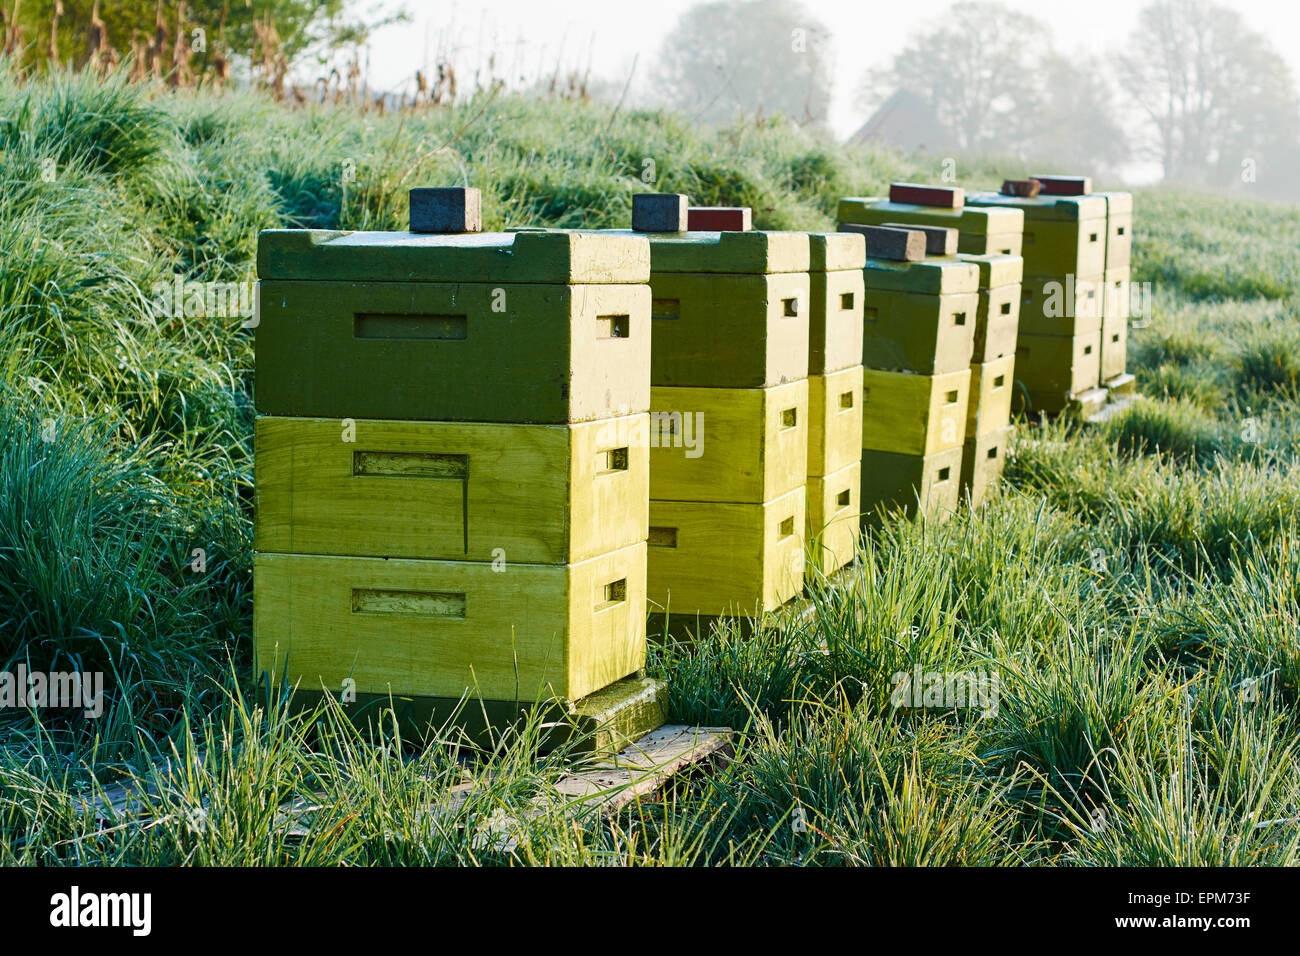 Allemagne, Werder, rangée de ruches Banque D'Images